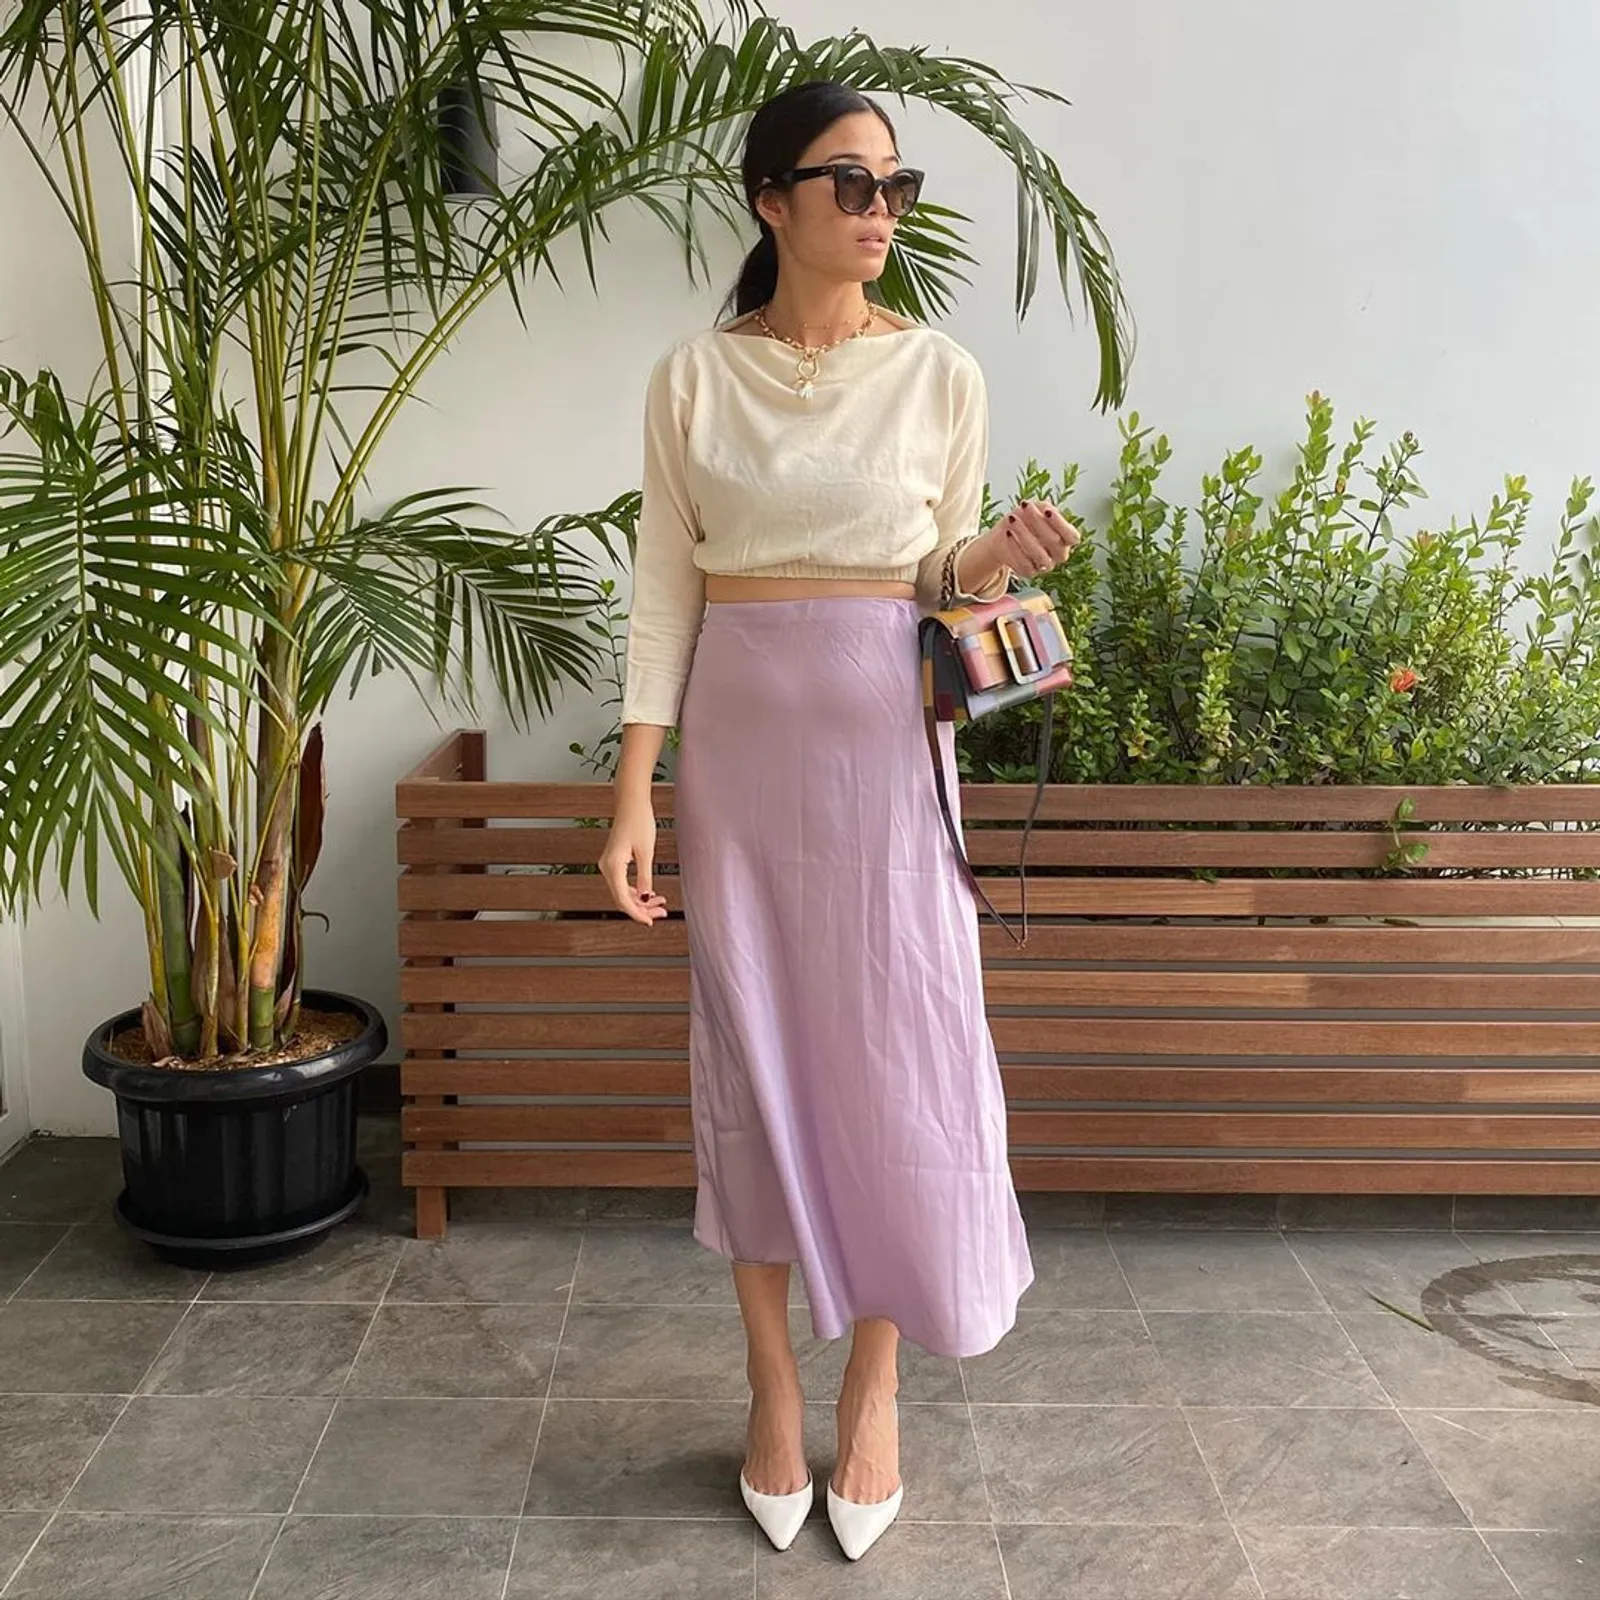 Mudah Ditiru, Ini Gaya Selebgram Indonesia Pakai Outfit Warna Lilac